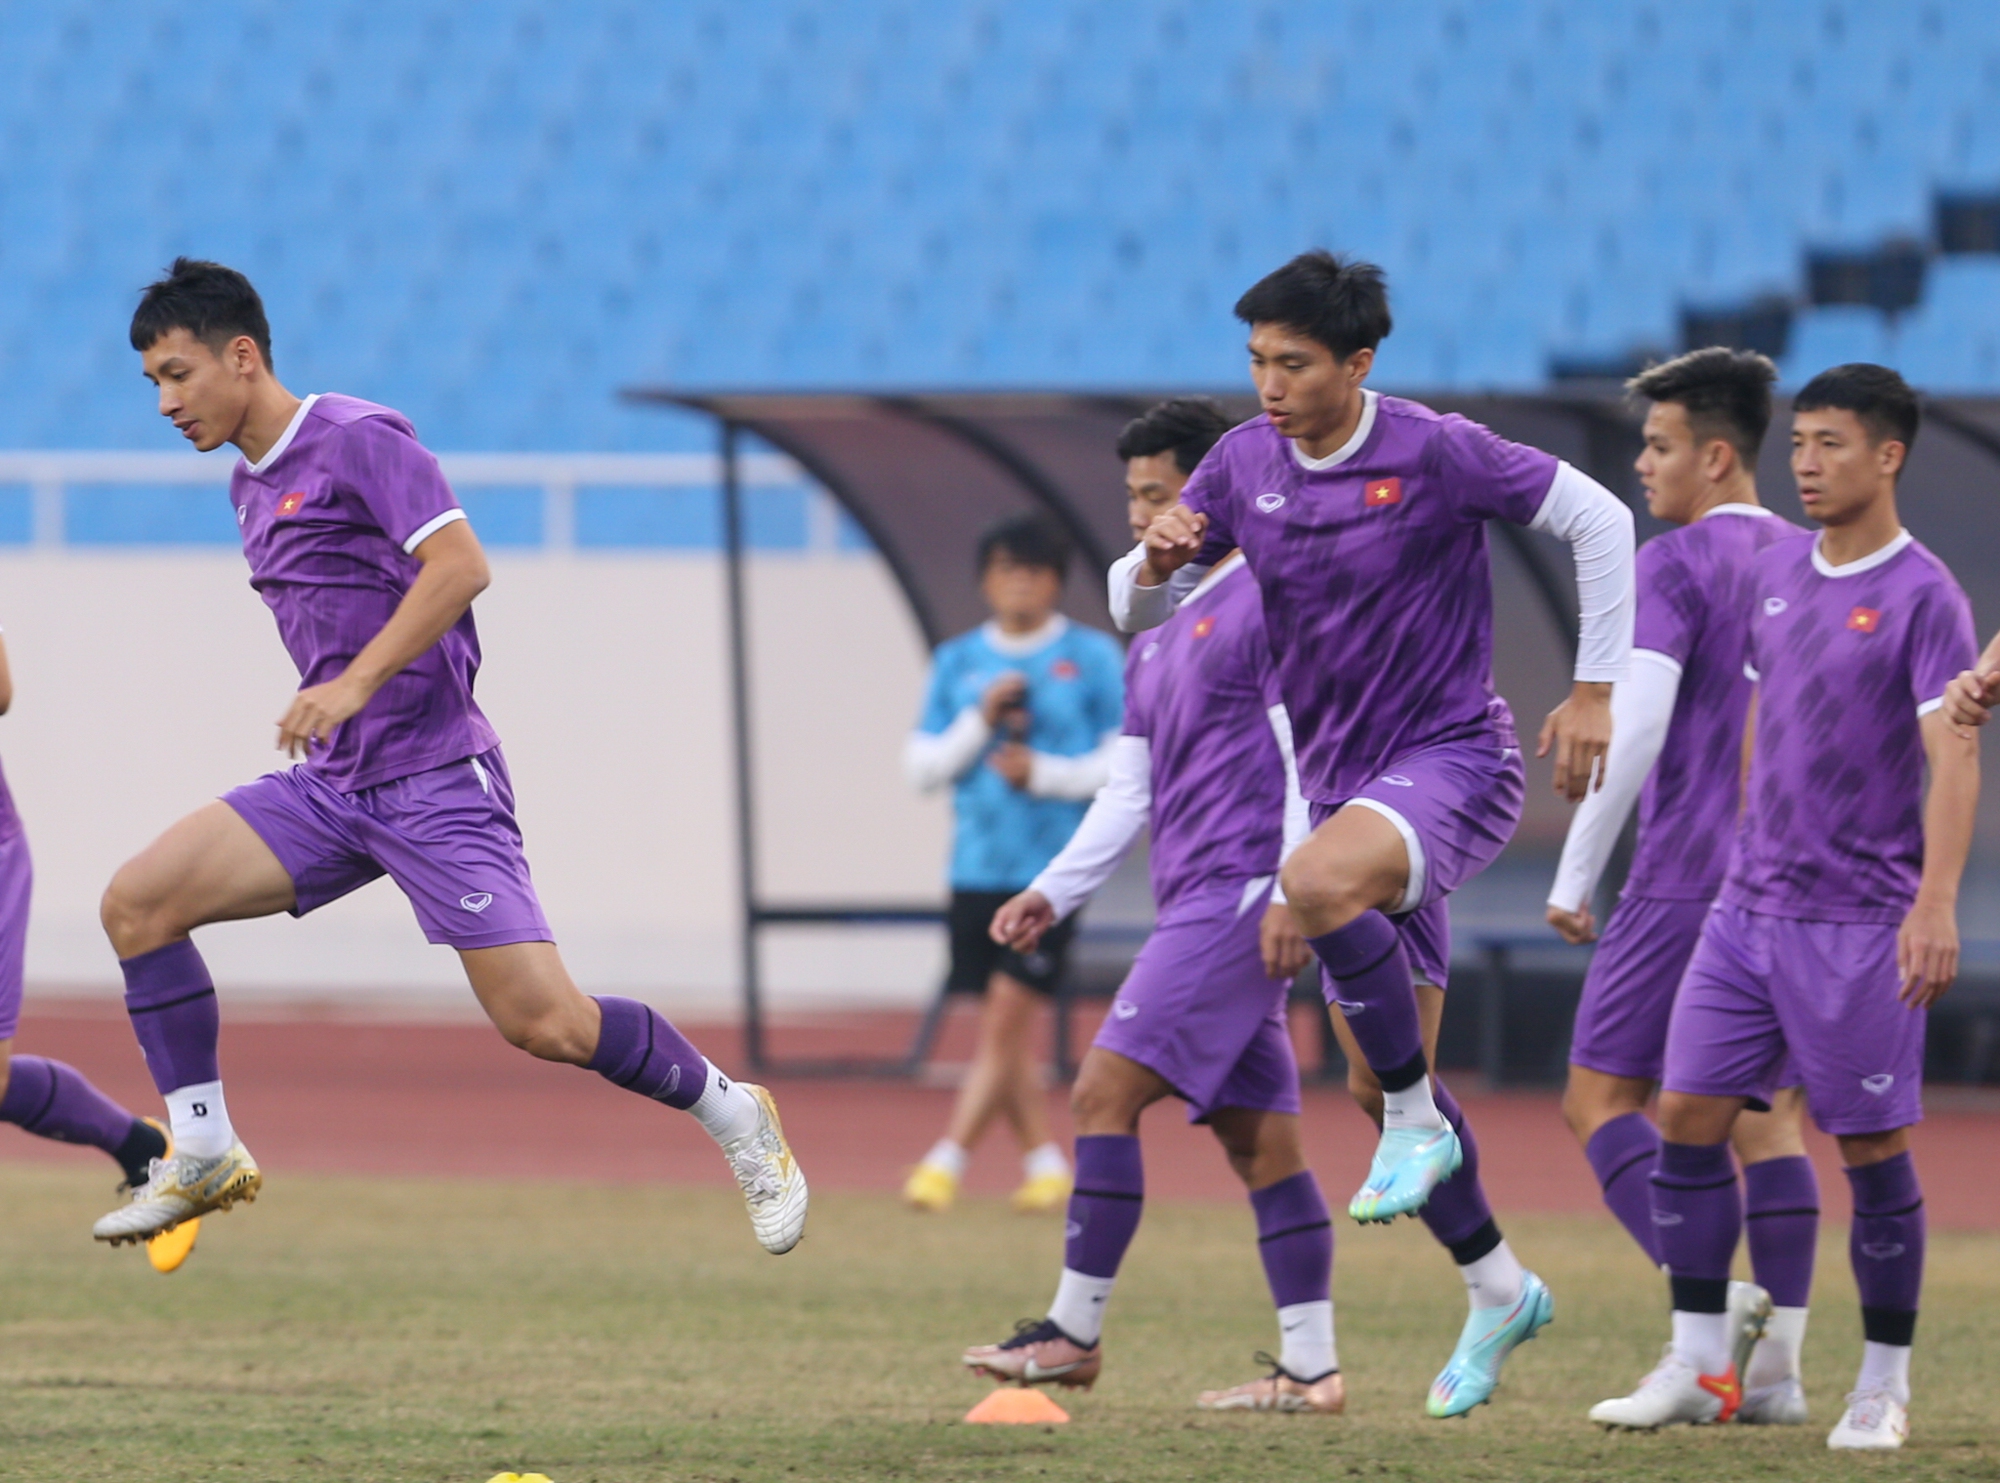 HLV Park Hang-seo kiểm tra sân, đội tuyển Việt Nam đến sớm phải khởi động ngoài đường chạy - Ảnh 8.